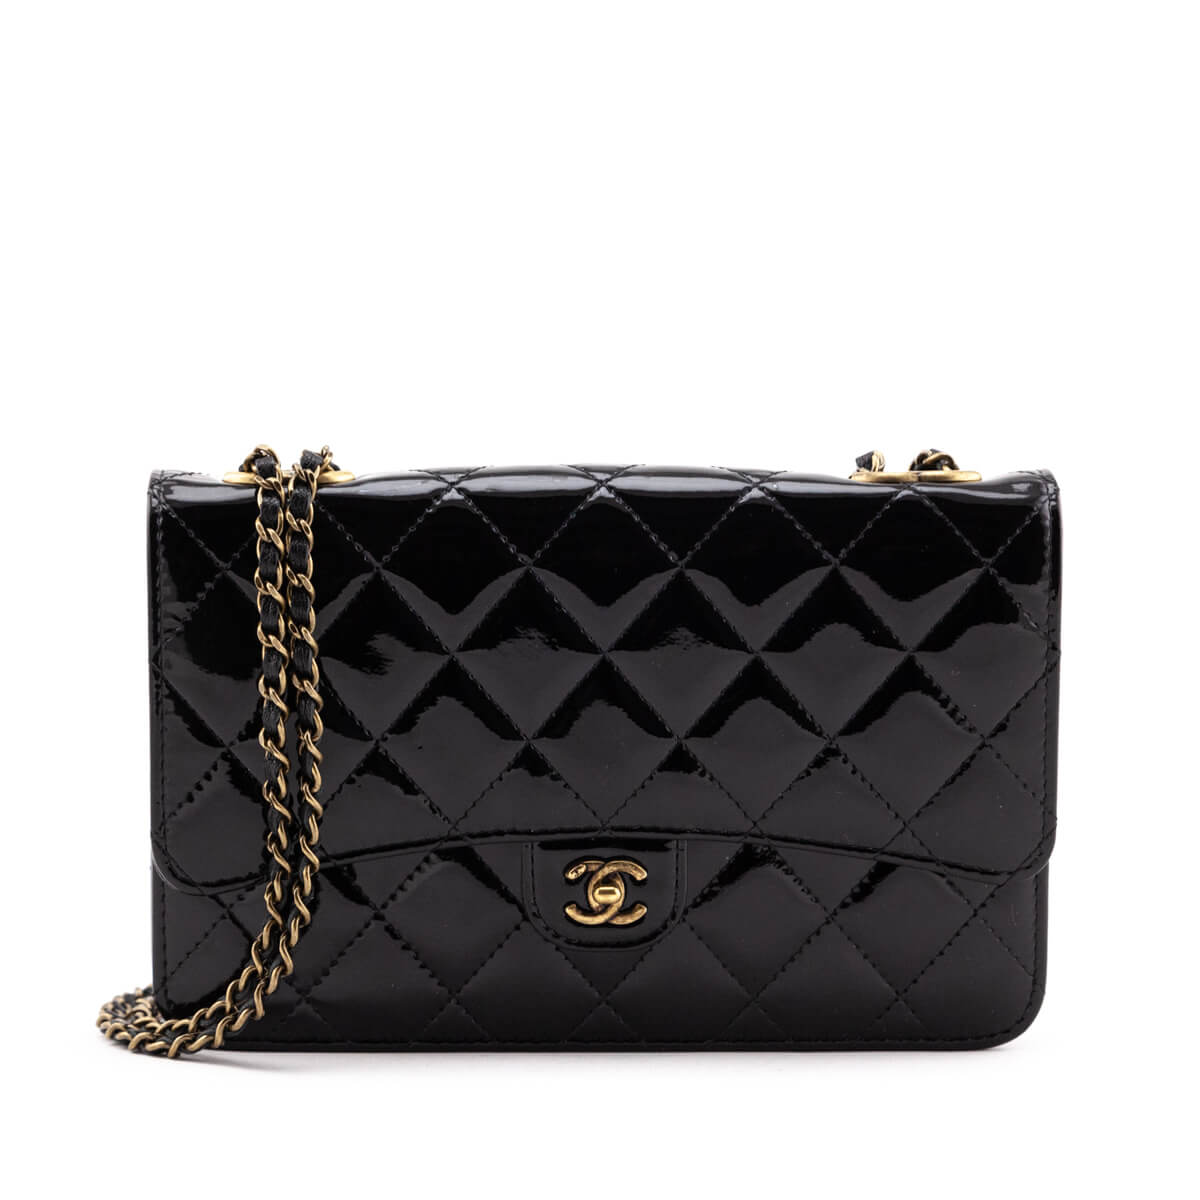 Chanel WOC vs Louis Vuitton Twist - Comparison of Mini Bags - 4